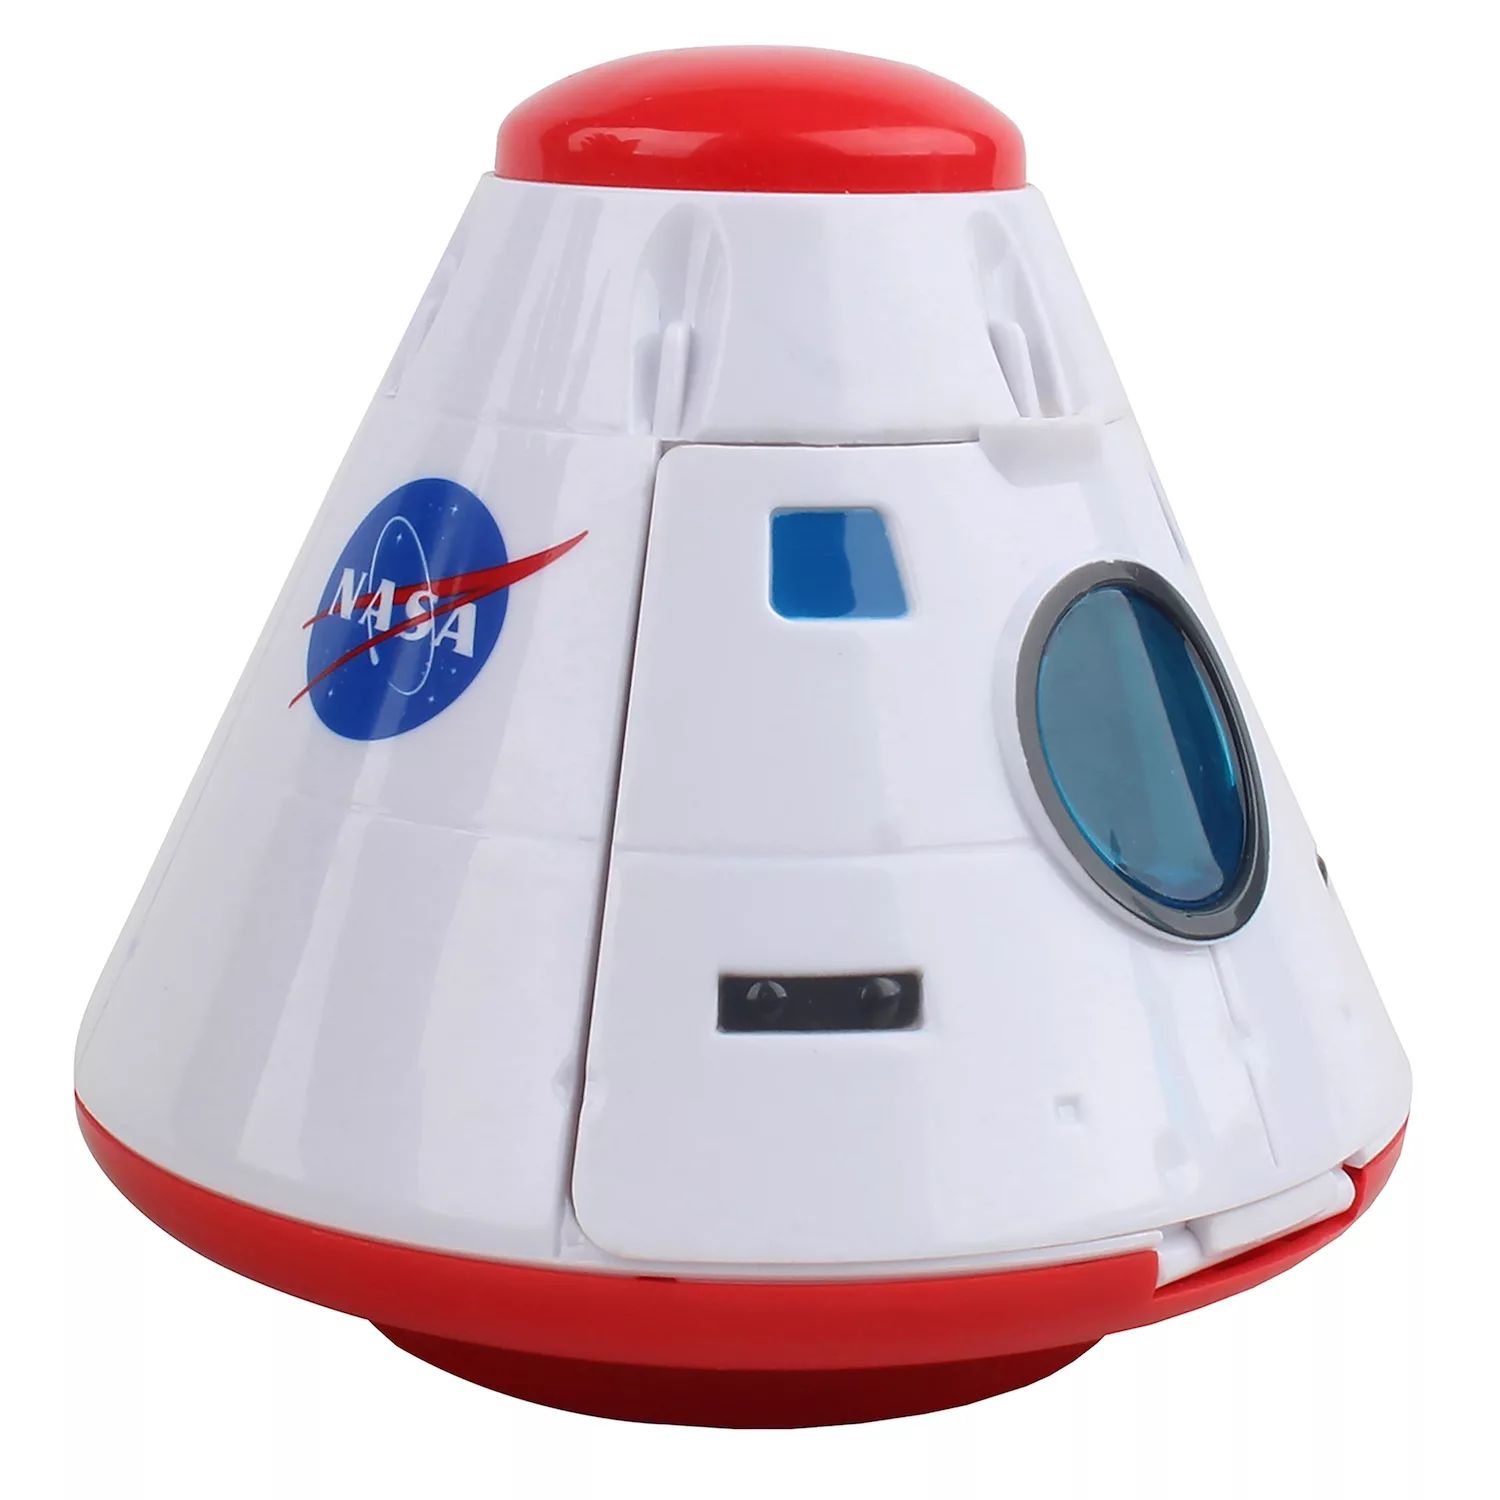 НАСА: Космическое приключение — игровой набор в космической капсуле NASA